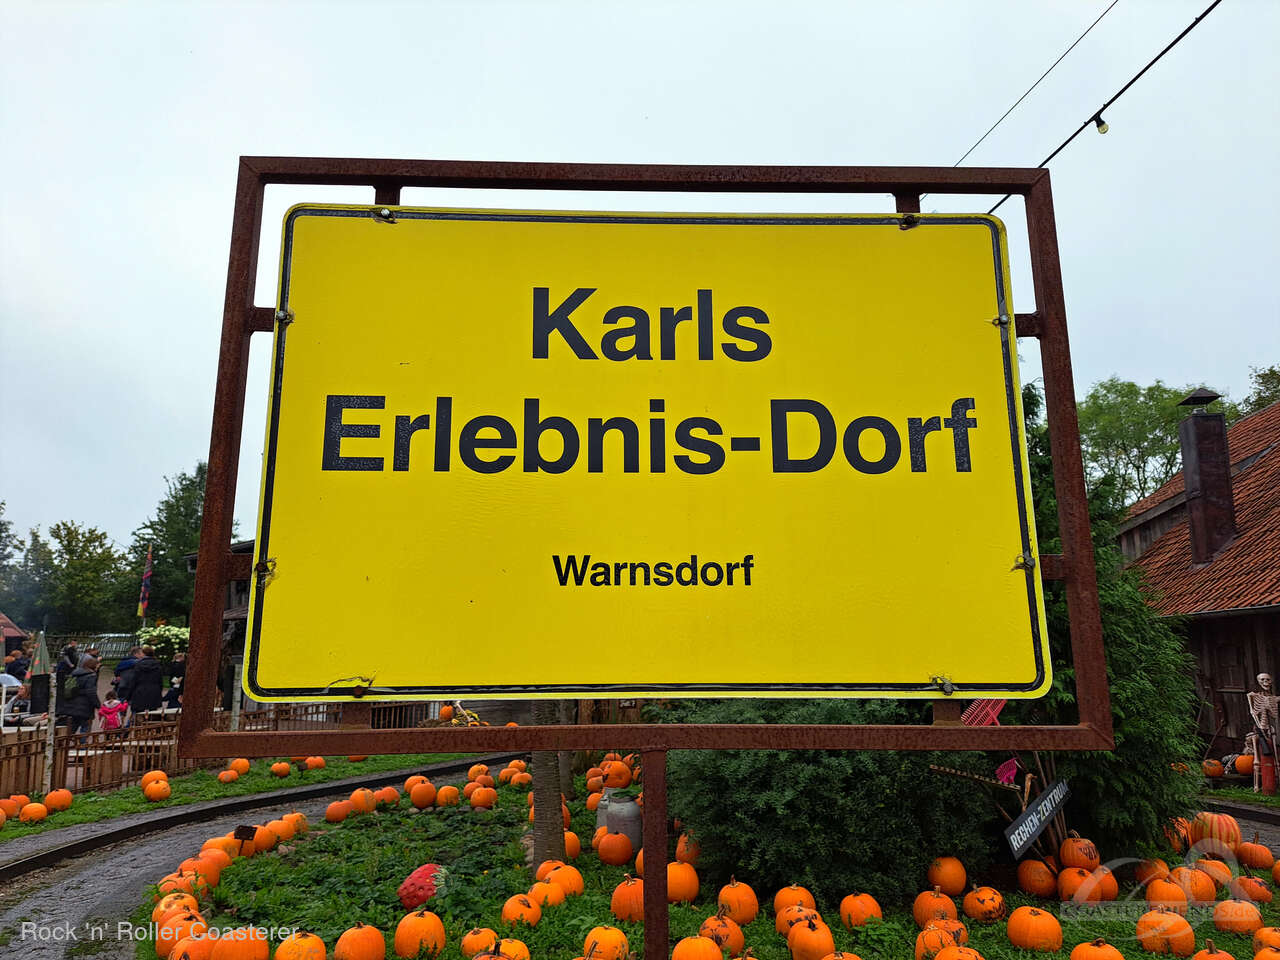 Karls Erlebnis-Dorf Warnsdorf Impressionen